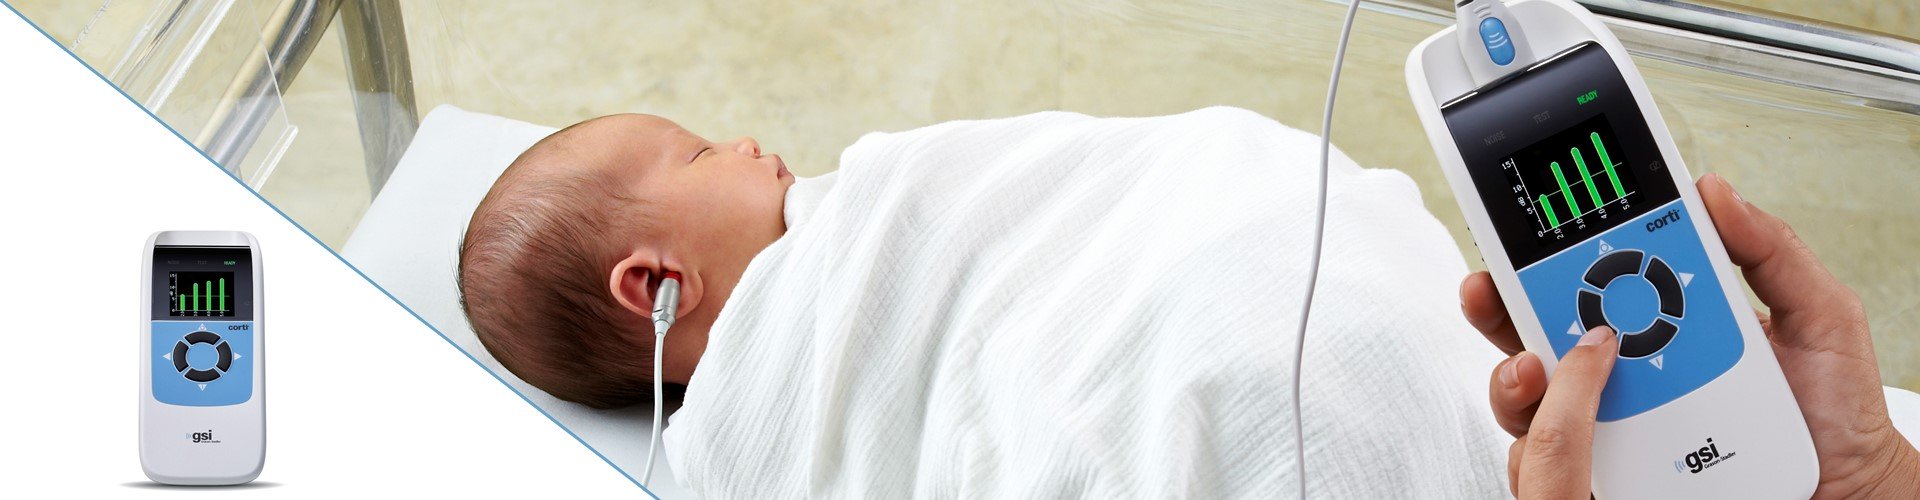 OAE-Test bei einem Säugling mit dem GSI Corti